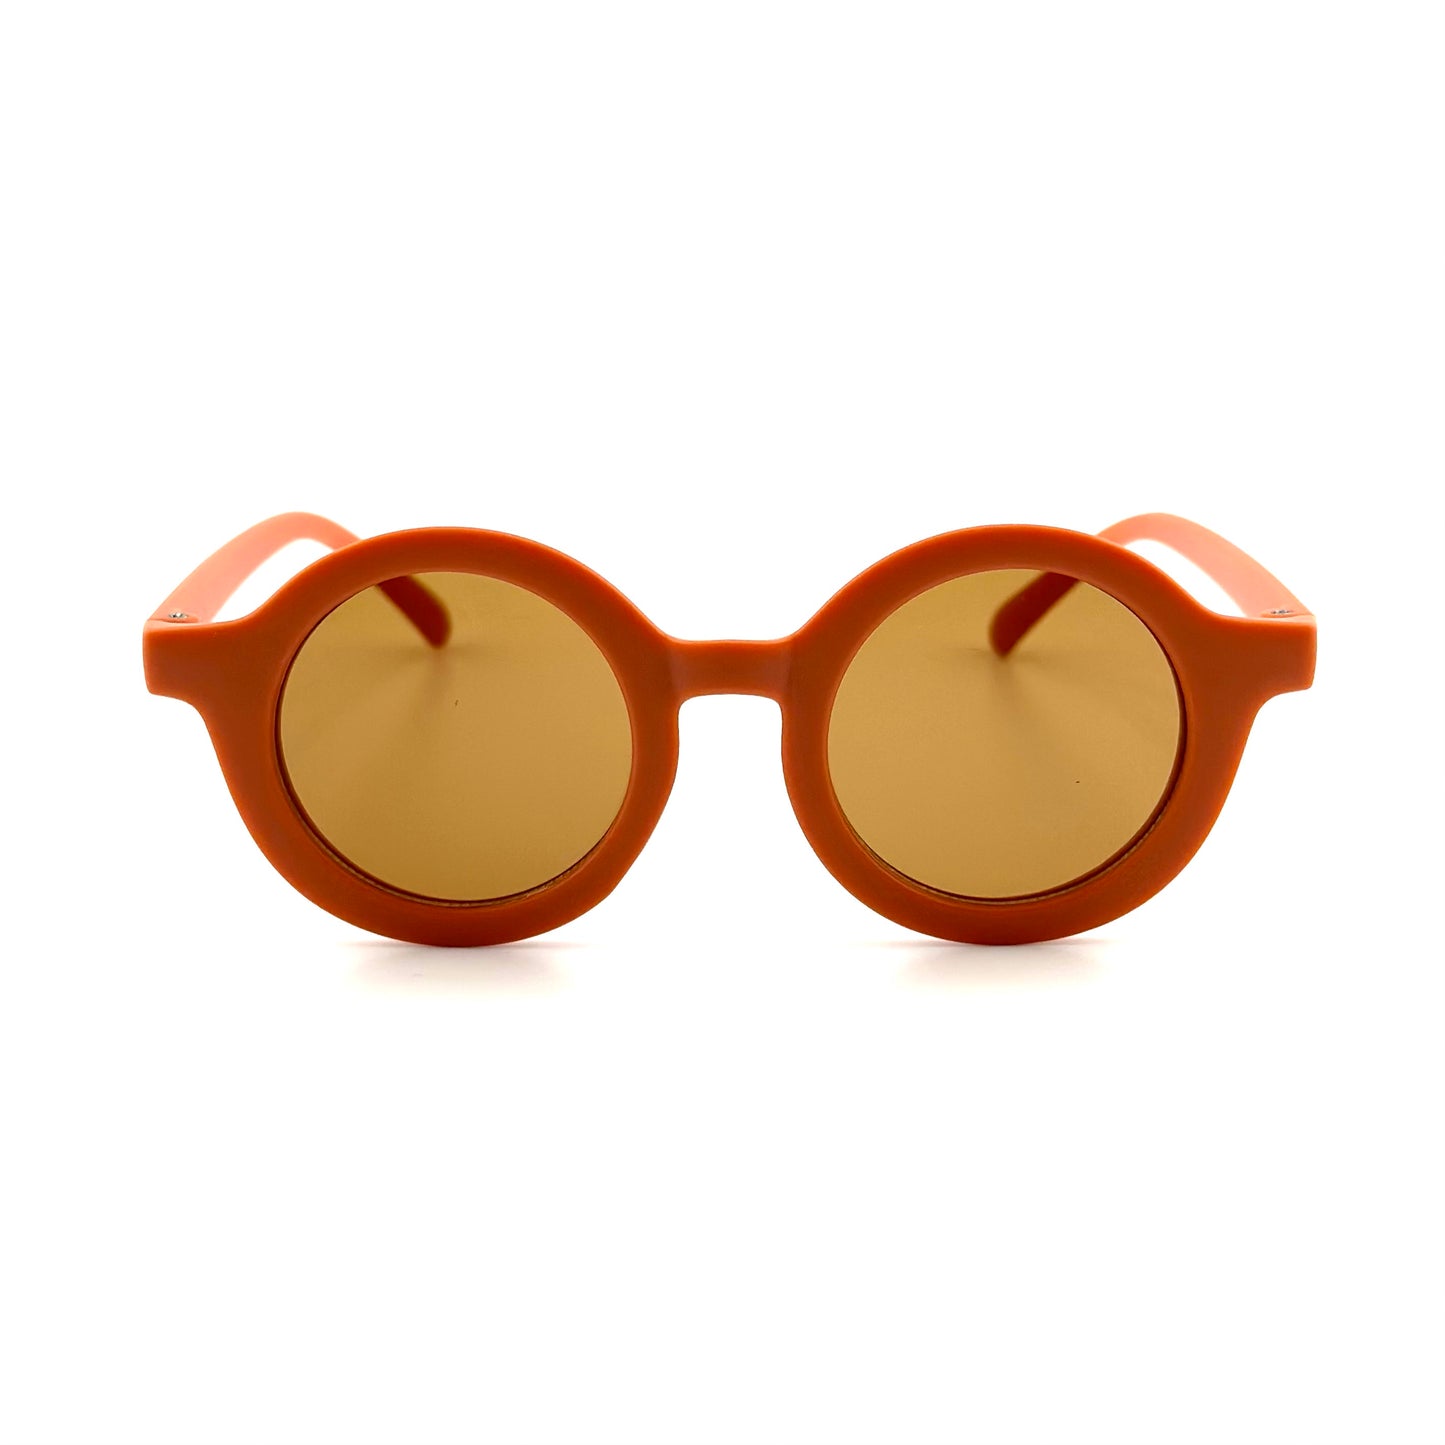 
                  
                    Gafas de sol bebé Orange Sostenibles Nenina & Co
                  
                